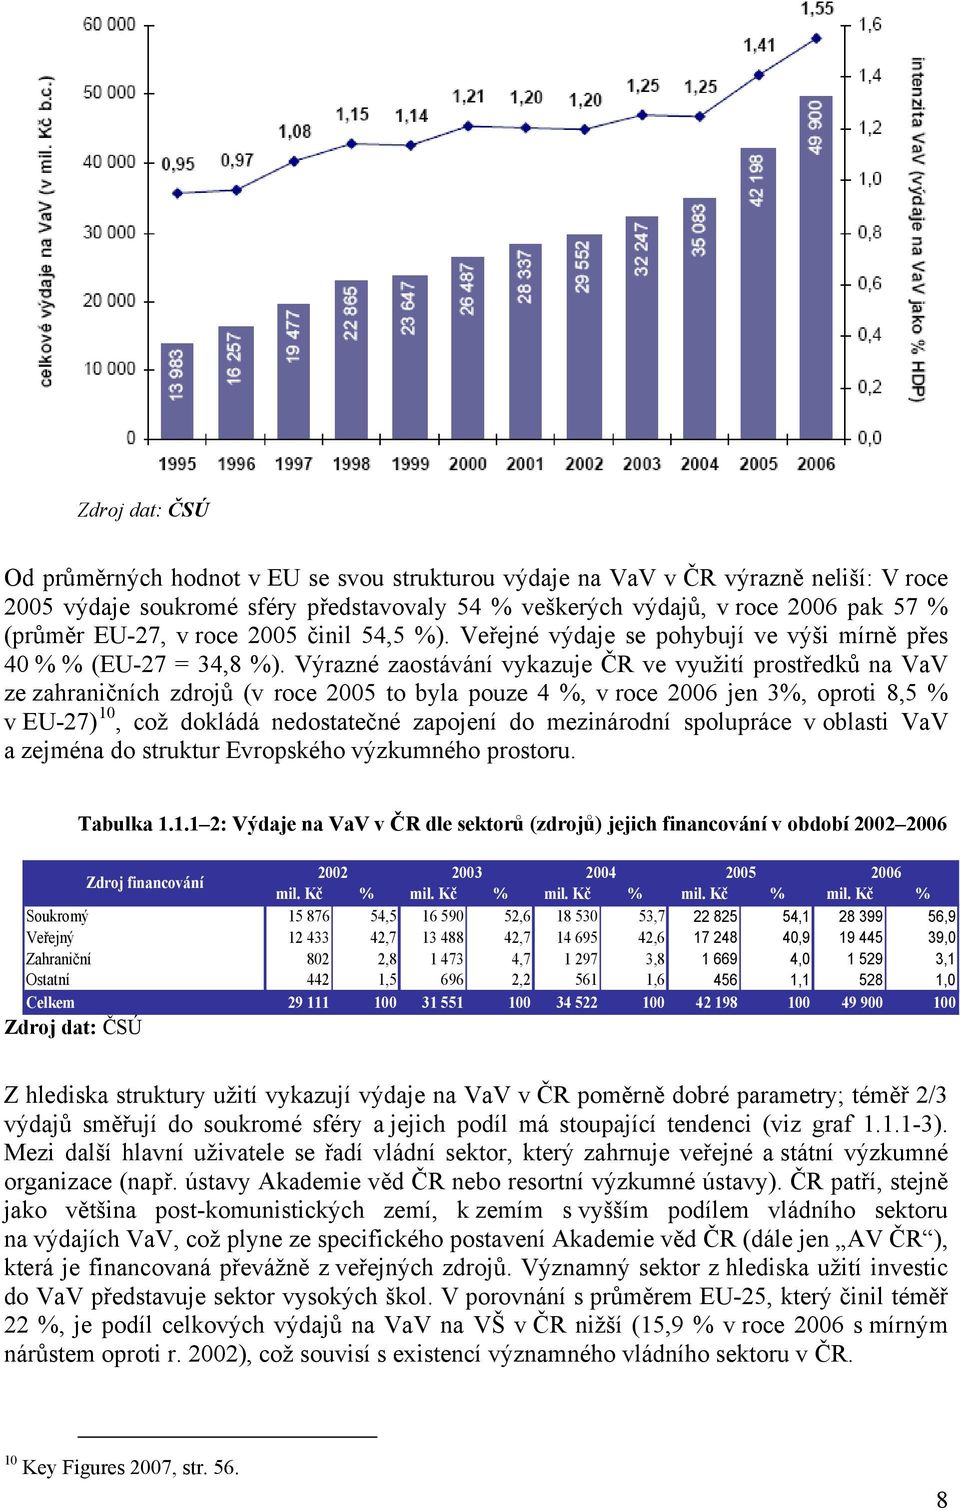 Výrazné zaostávání vykazuje ČR ve využití prostředků na VaV ze zahraničních zdrojů (v roce 2005 to byla pouze 4 %, v roce 2006 jen 3%, oproti 8,5 % v EU-27) 10, což dokládá nedostatečné zapojení do